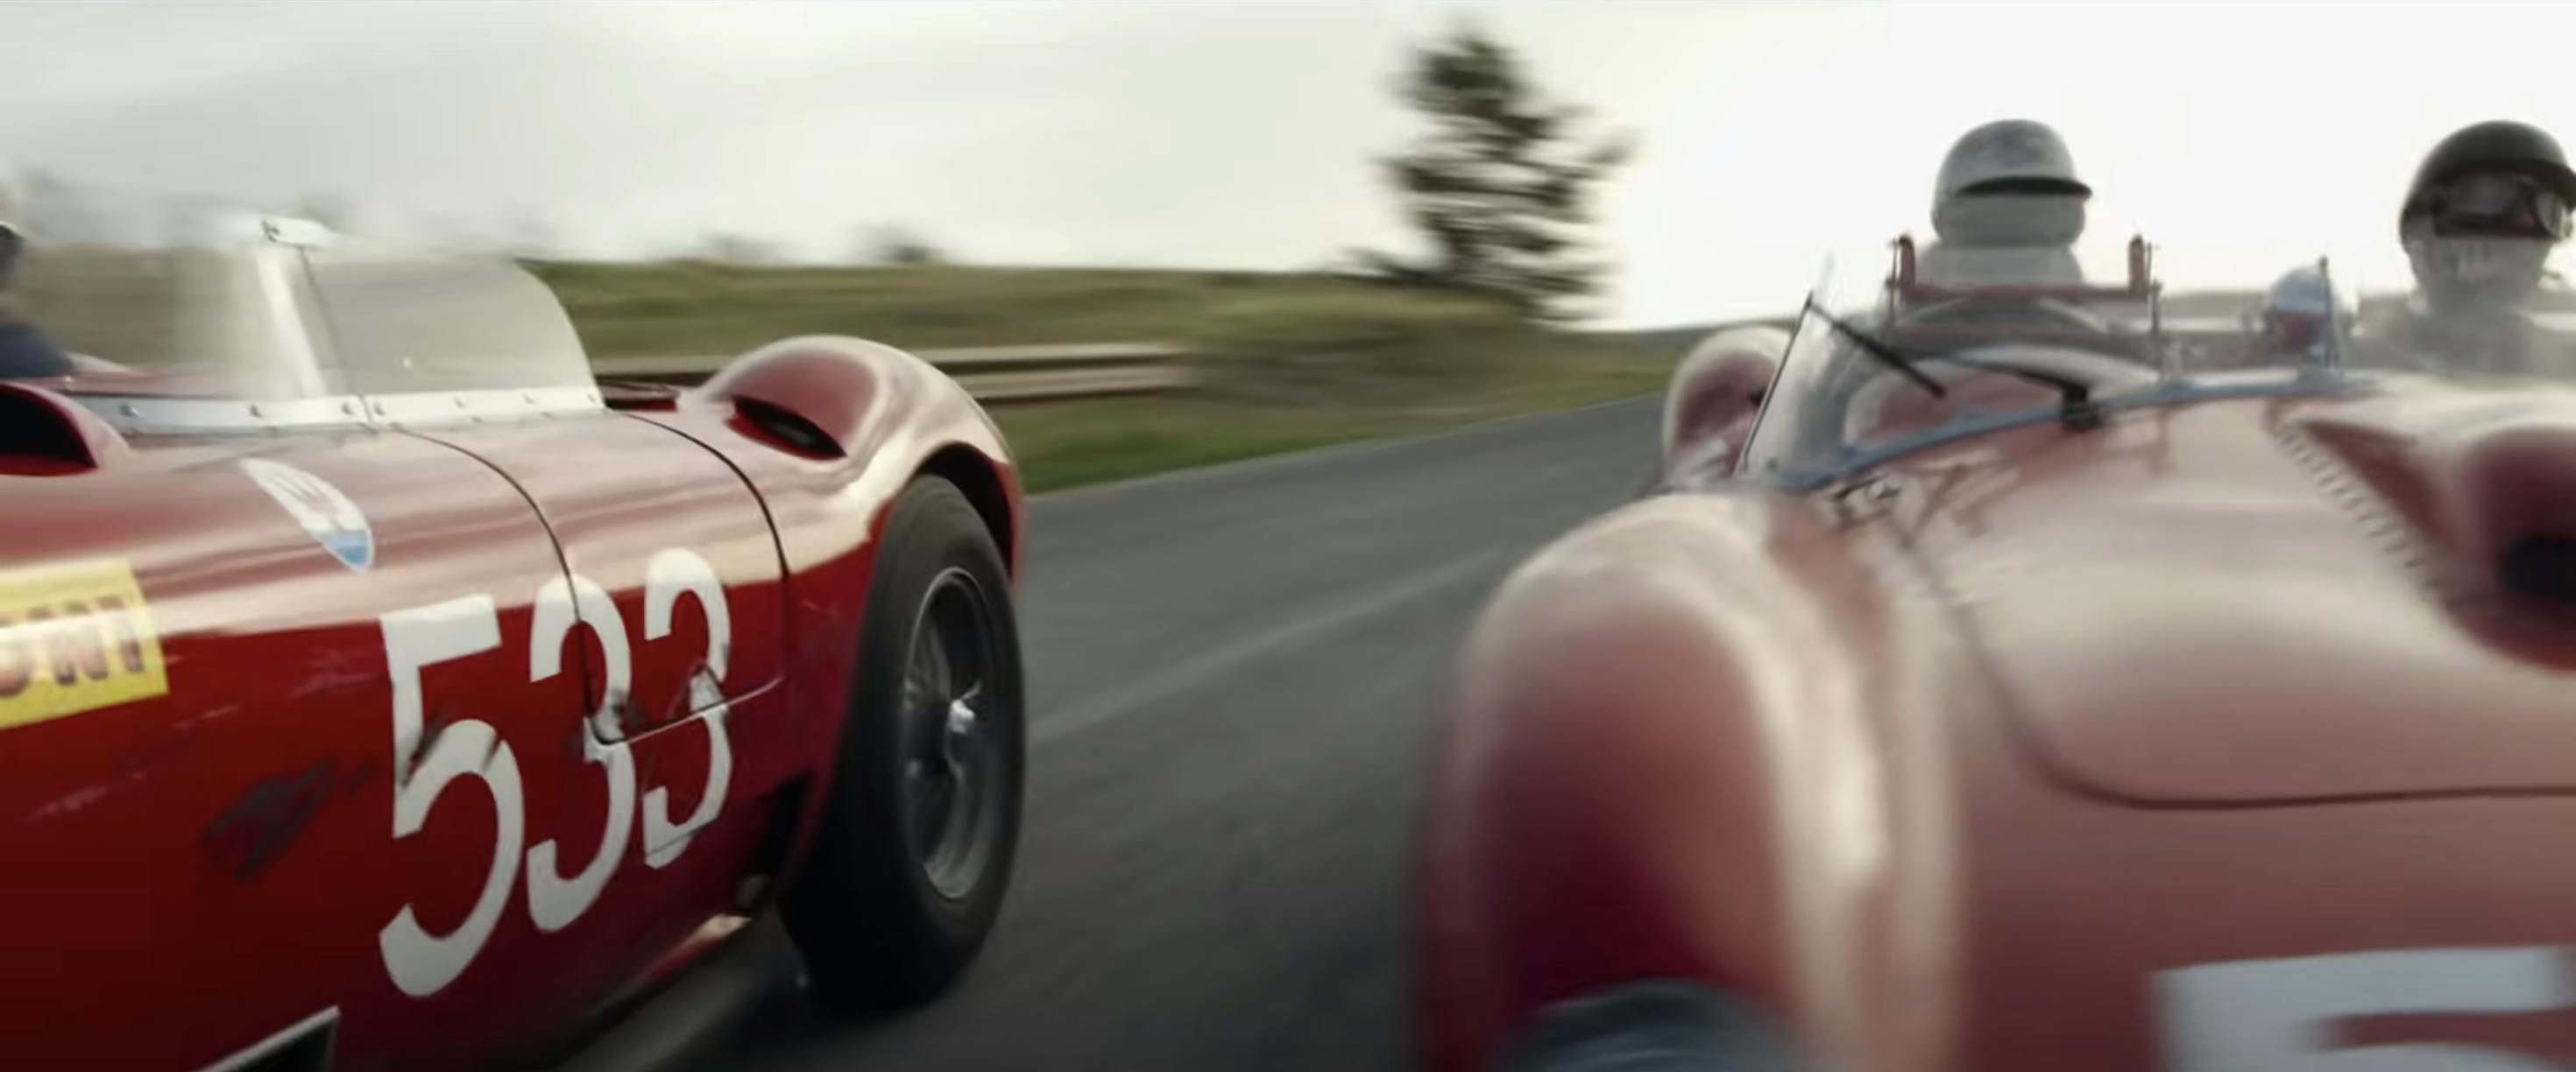 Ferrari film racing action still battle